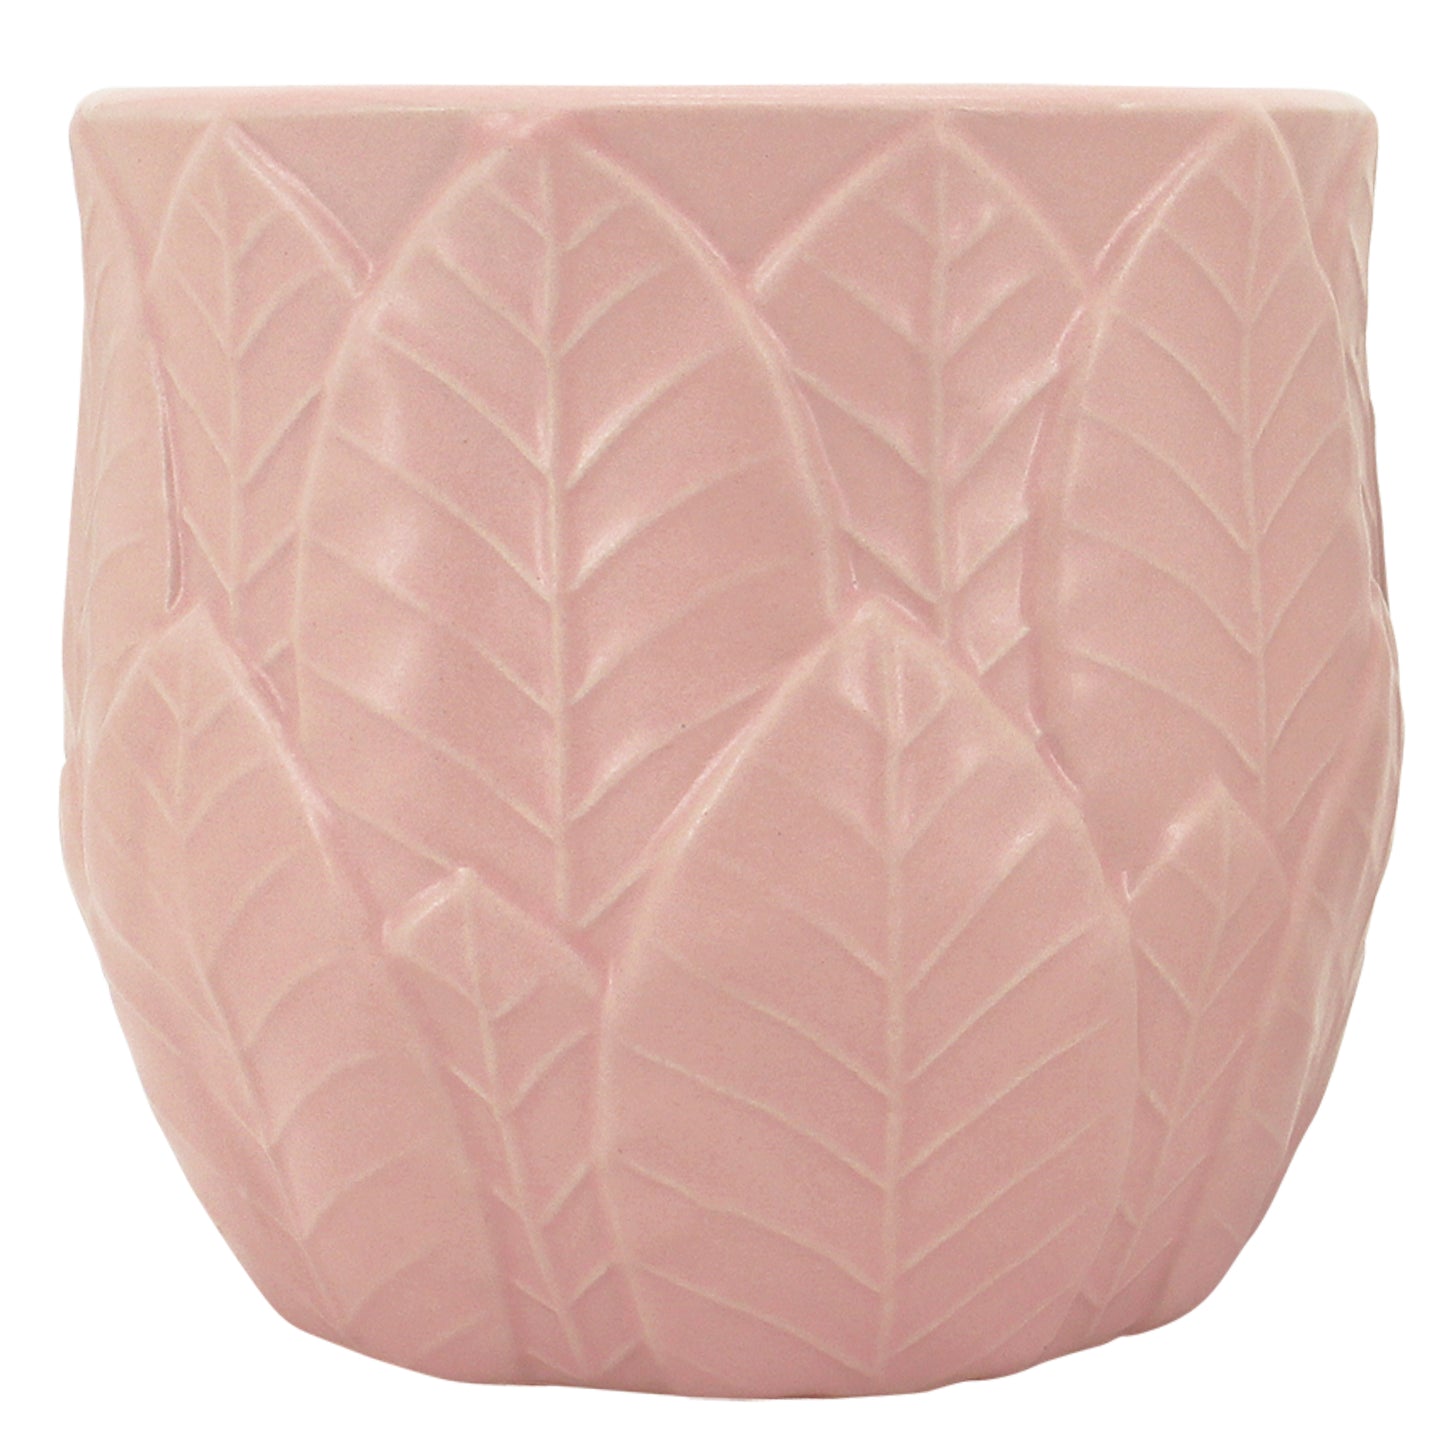 NF "Falling Leaf" Planter Pot Pink 19x18cm